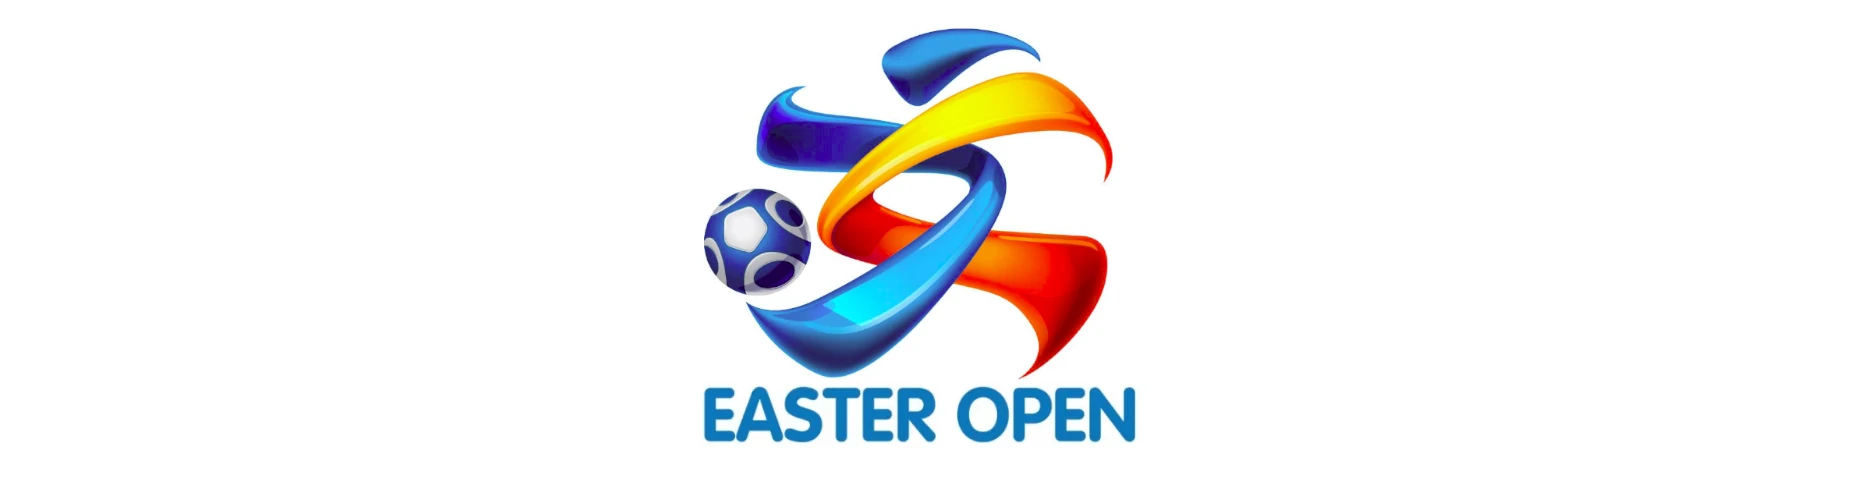 Banner - Easter Open Zuid - UDI ’19 - Uden